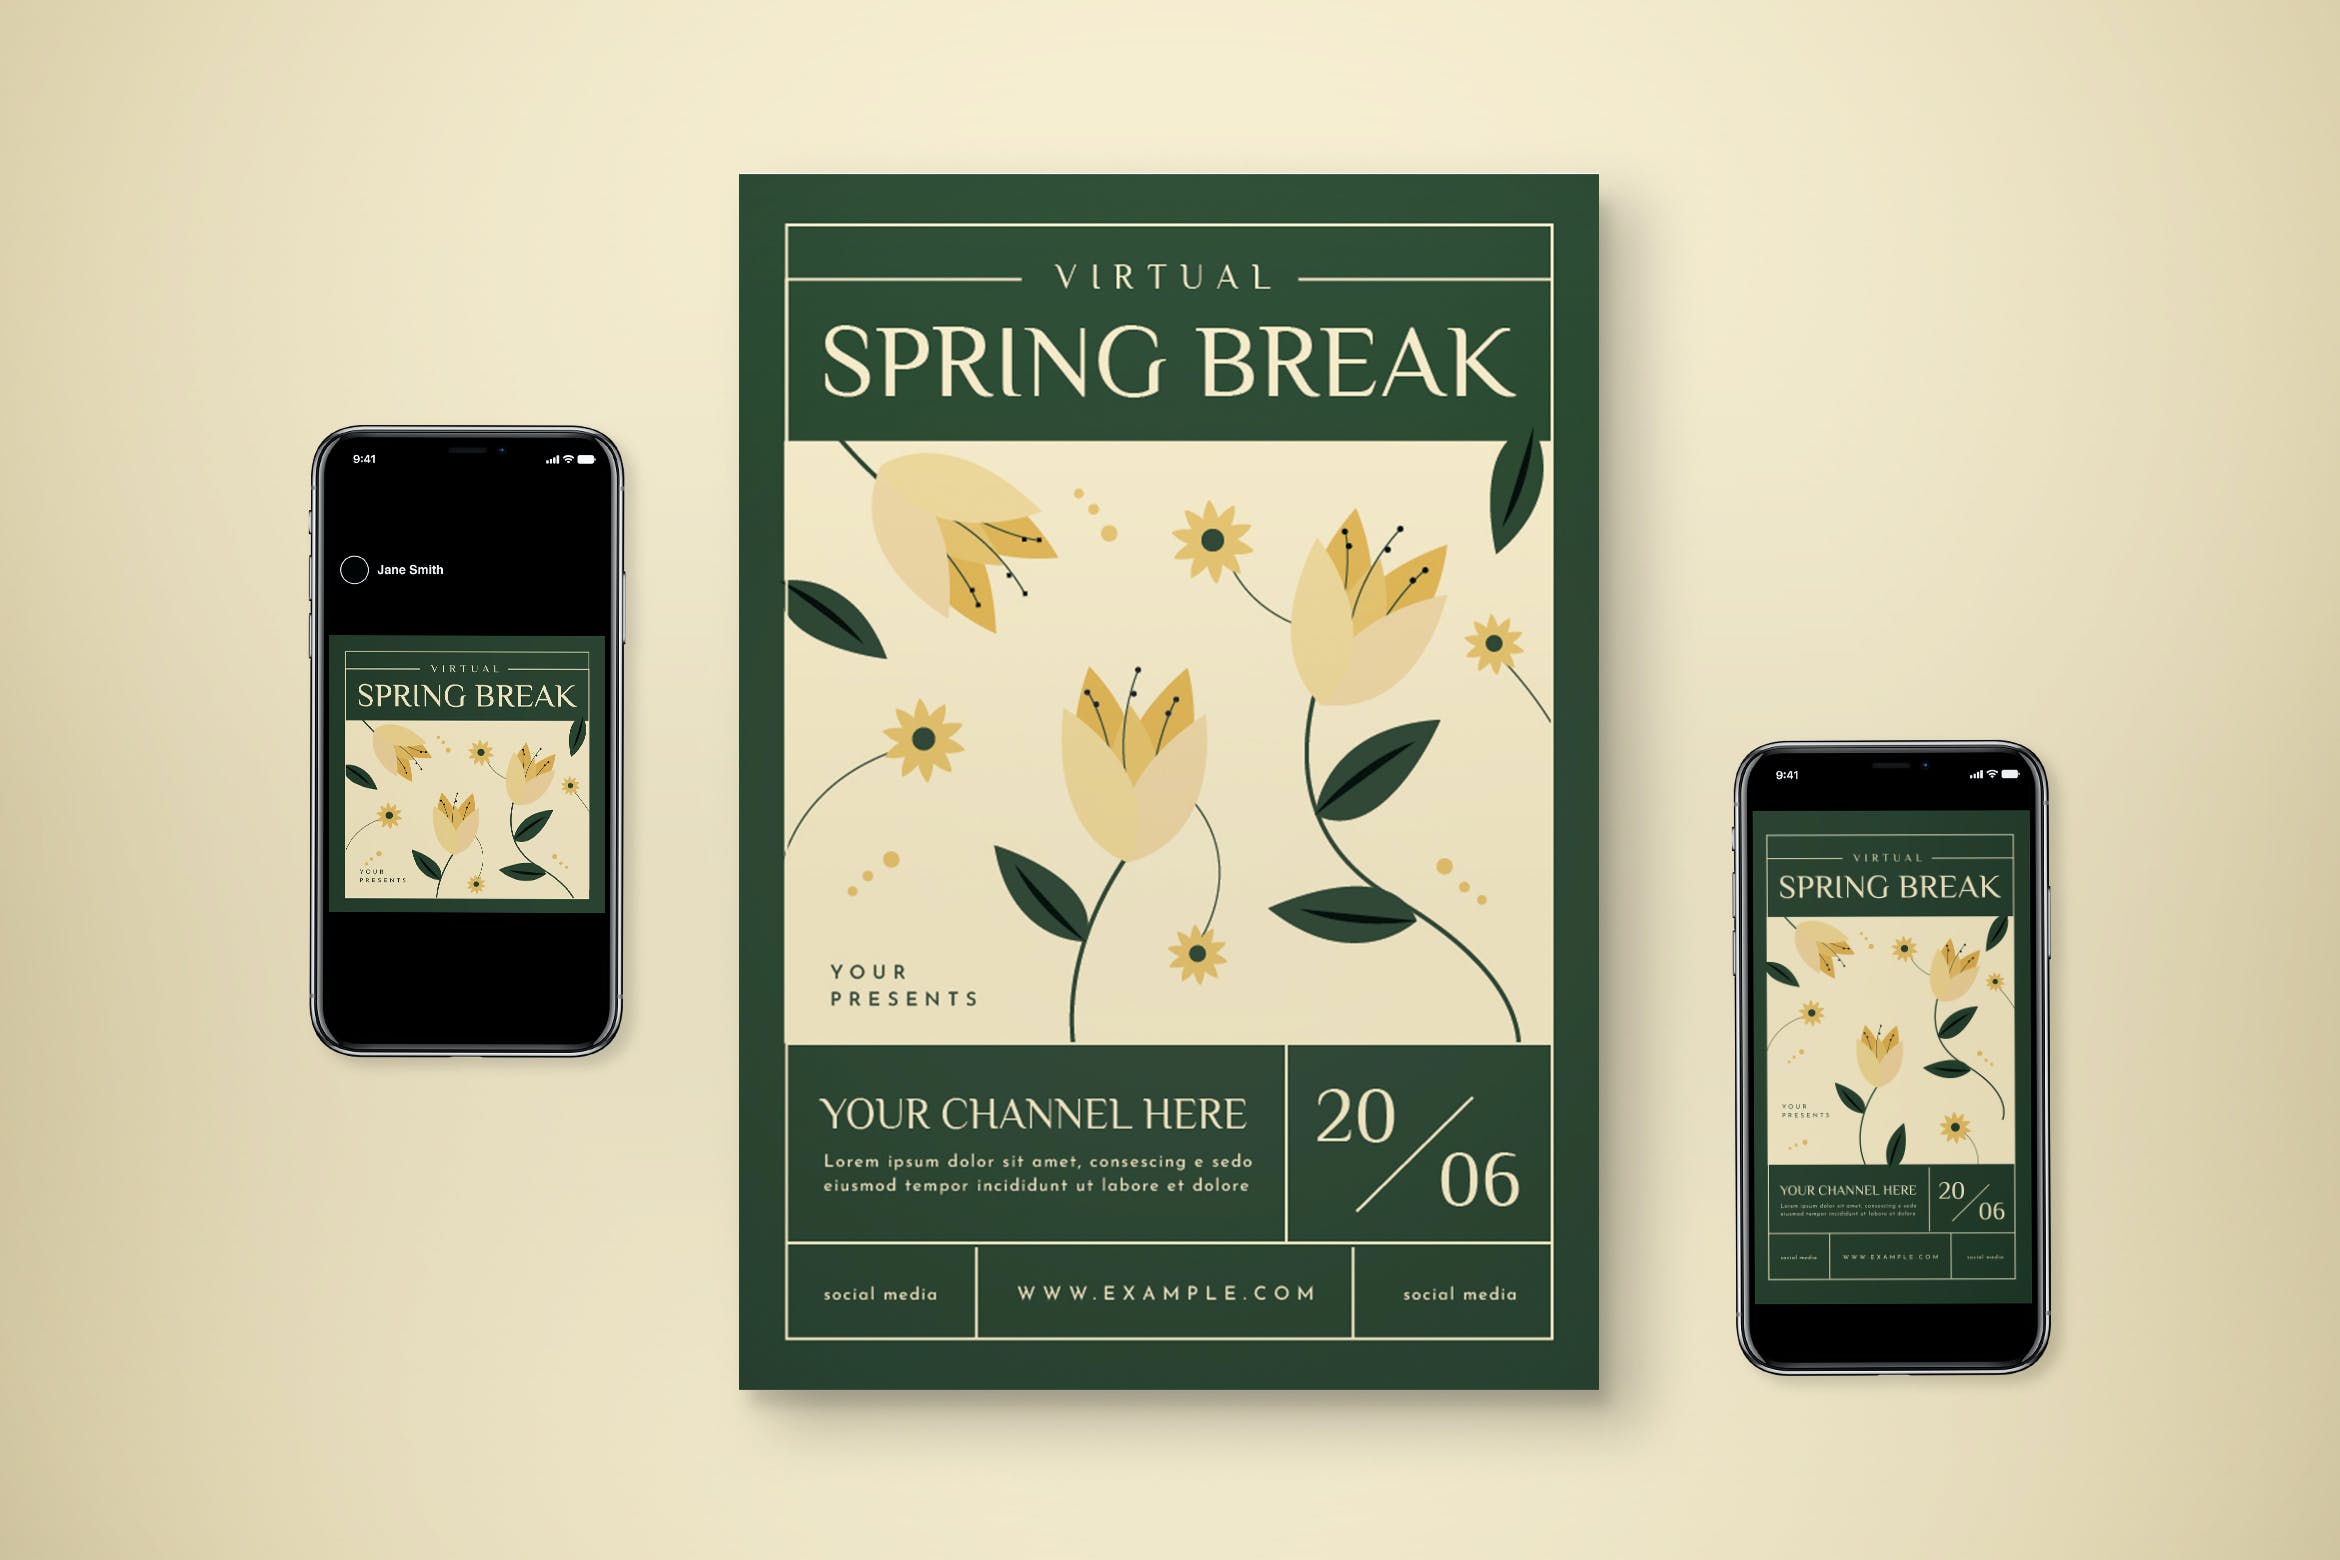 春天假期海报模板下载 Virtual Spring Break Flyer Set 设计素材 第1张